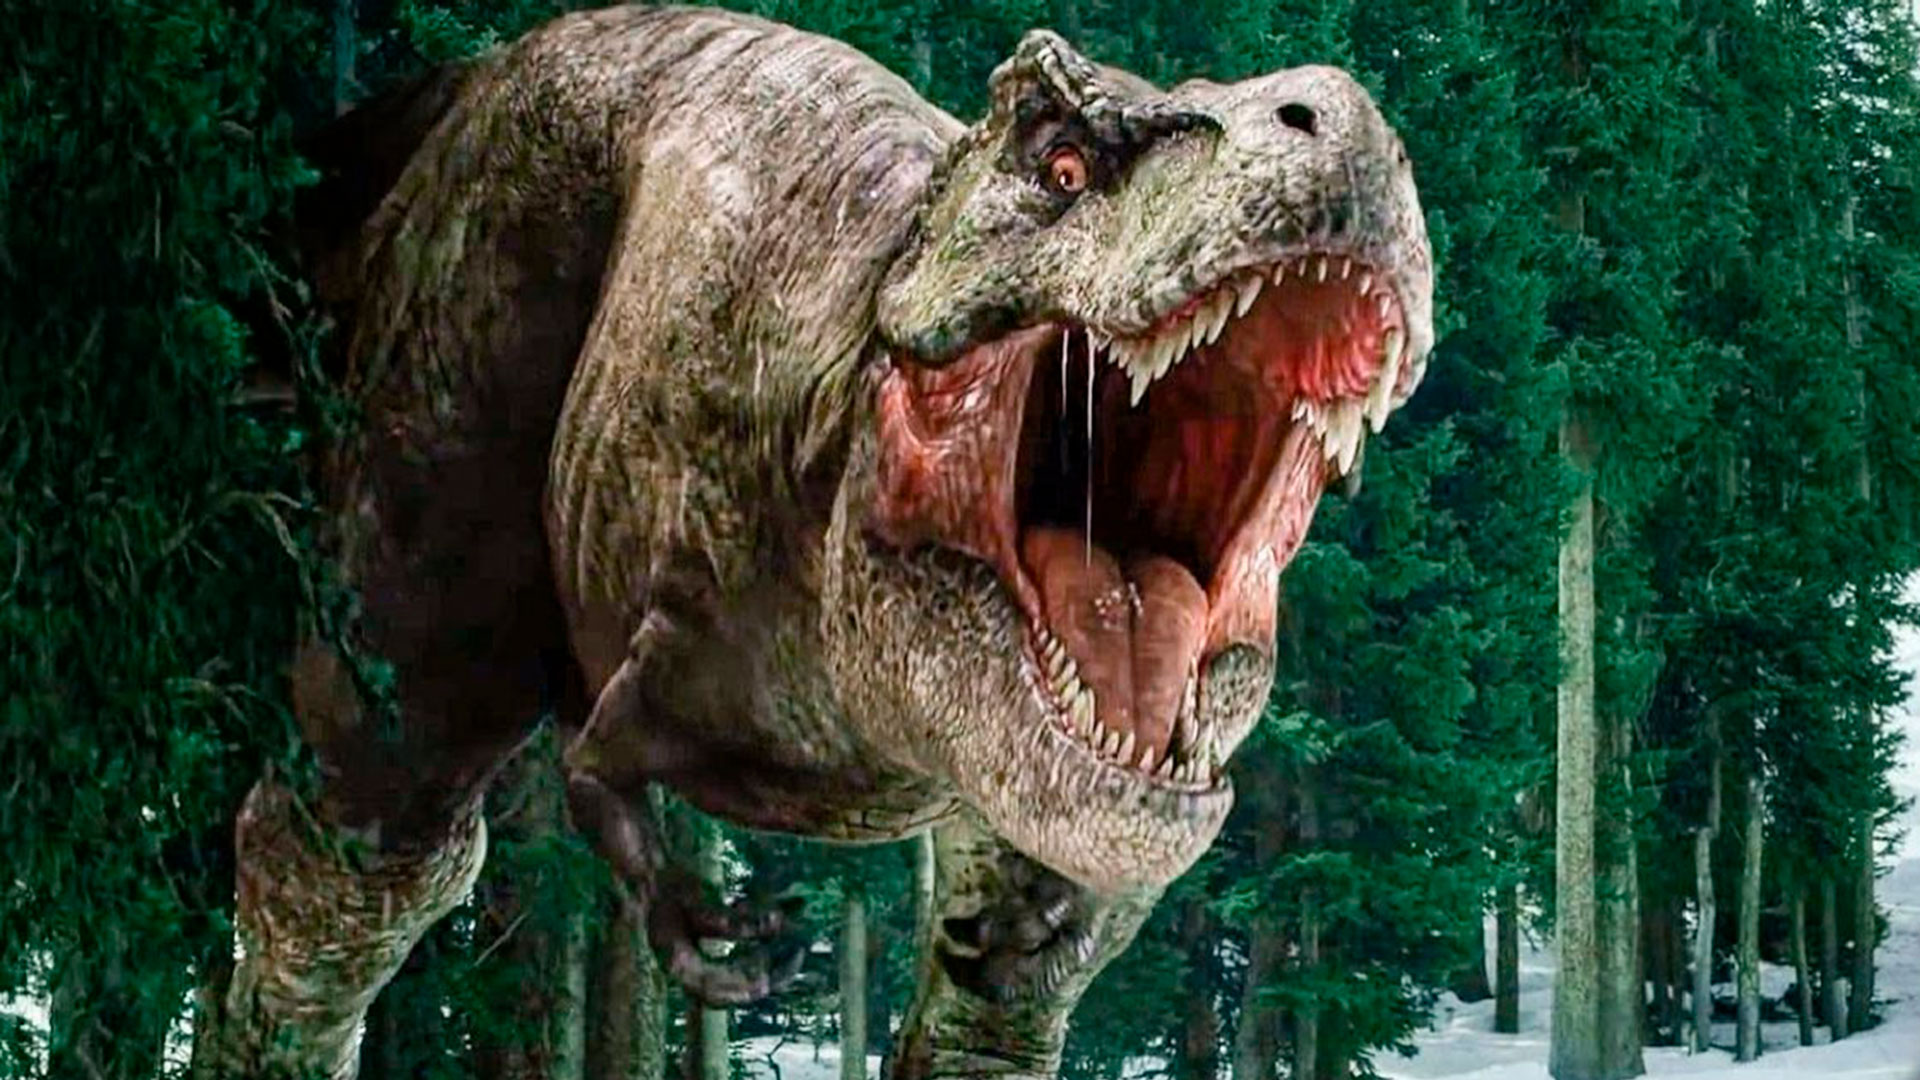 El argentino que descubrió el Giganotosaurus, el dinosaurio estrella de la  nueva Jurassic Park: “Acá no le dieron importancia” - Infobae